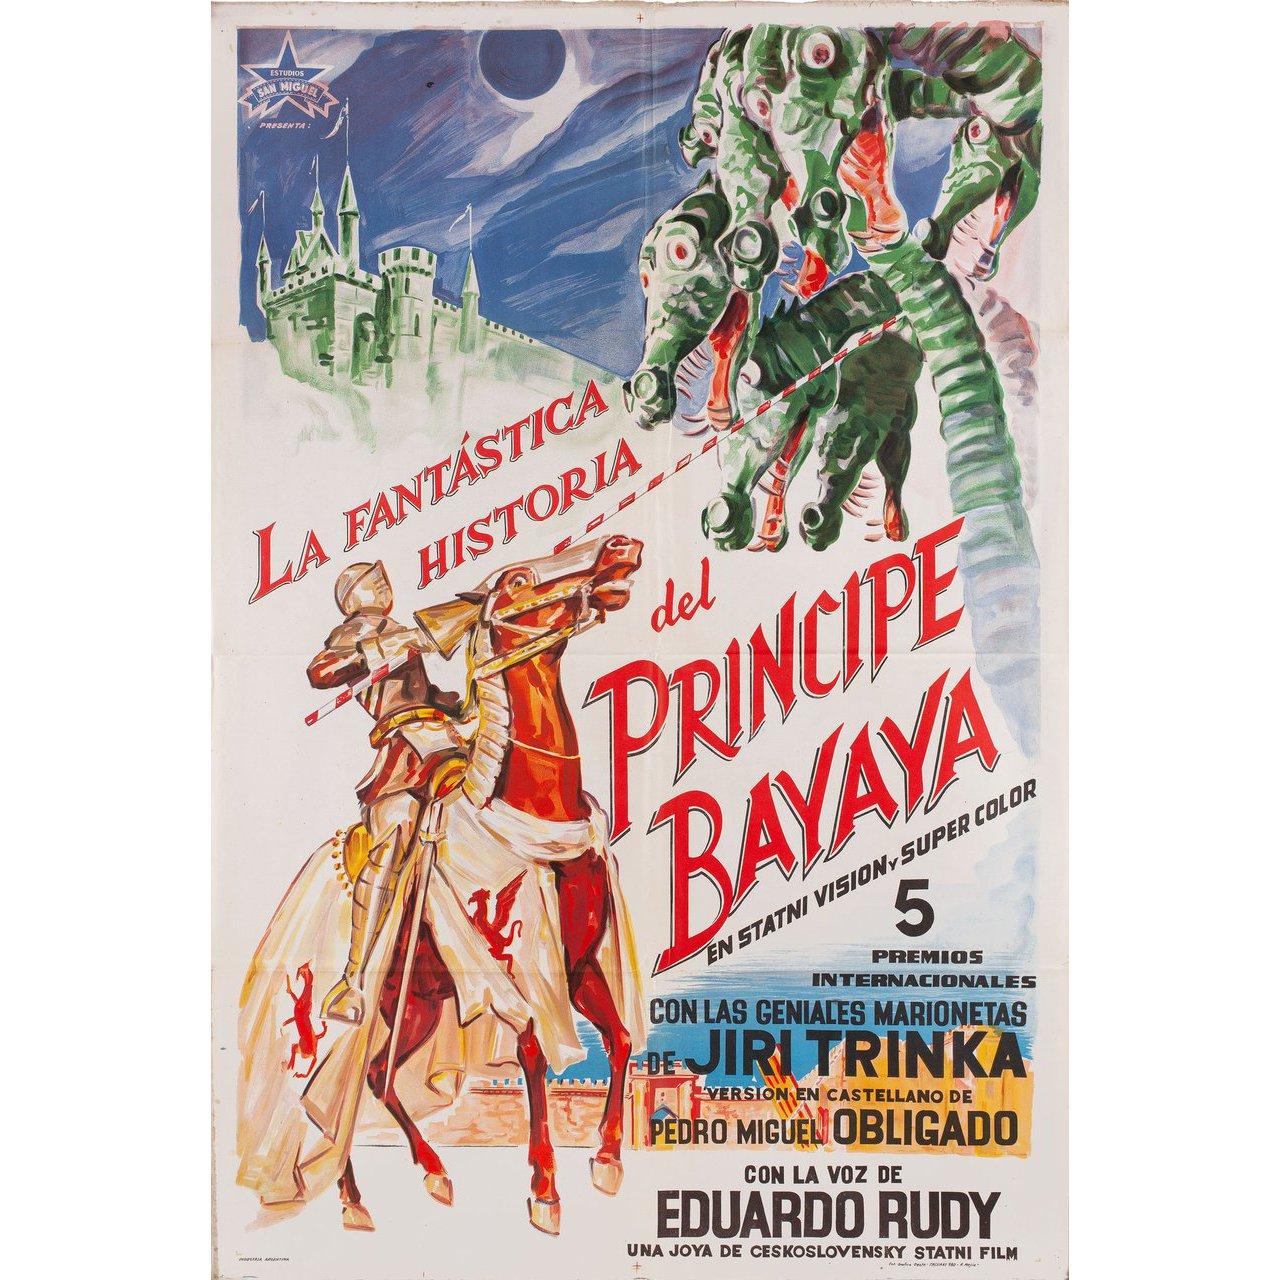 Affiche argentine originale de 1950 pour le film Bajaja réalisé par Jiri Trnka avec Detsky pevecky sbor Jana Kuhna. Très bon état, plié. De nombreuses affiches originales ont été publiées pliées ou ont été pliées par la suite. Veuillez noter que la